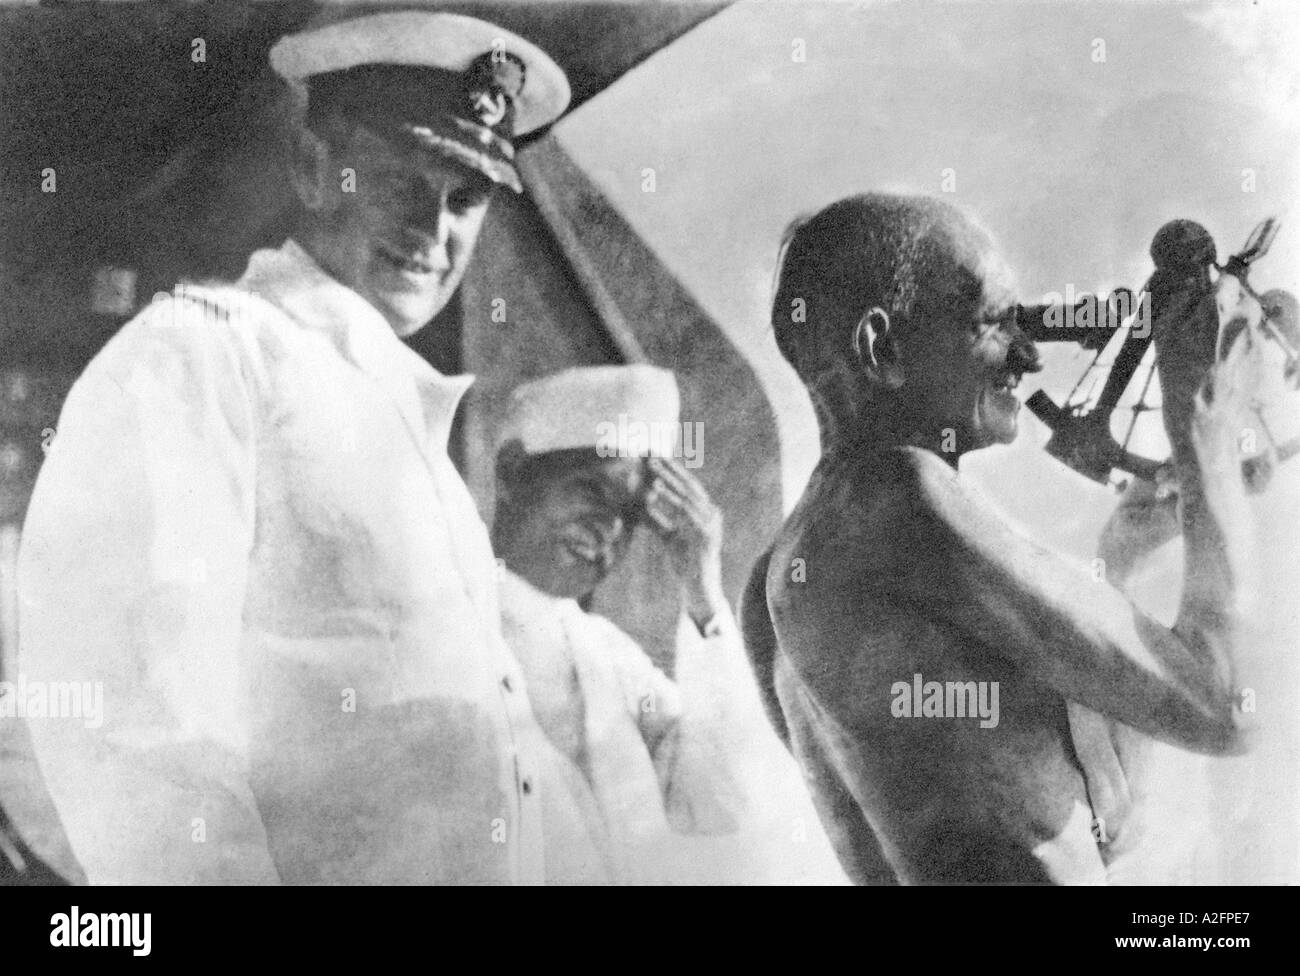 Mahatma Gandhi de la manipulation d'un instrument nautique sur les capitaines pont de SS Rajputana Septembre 1931 Banque D'Images